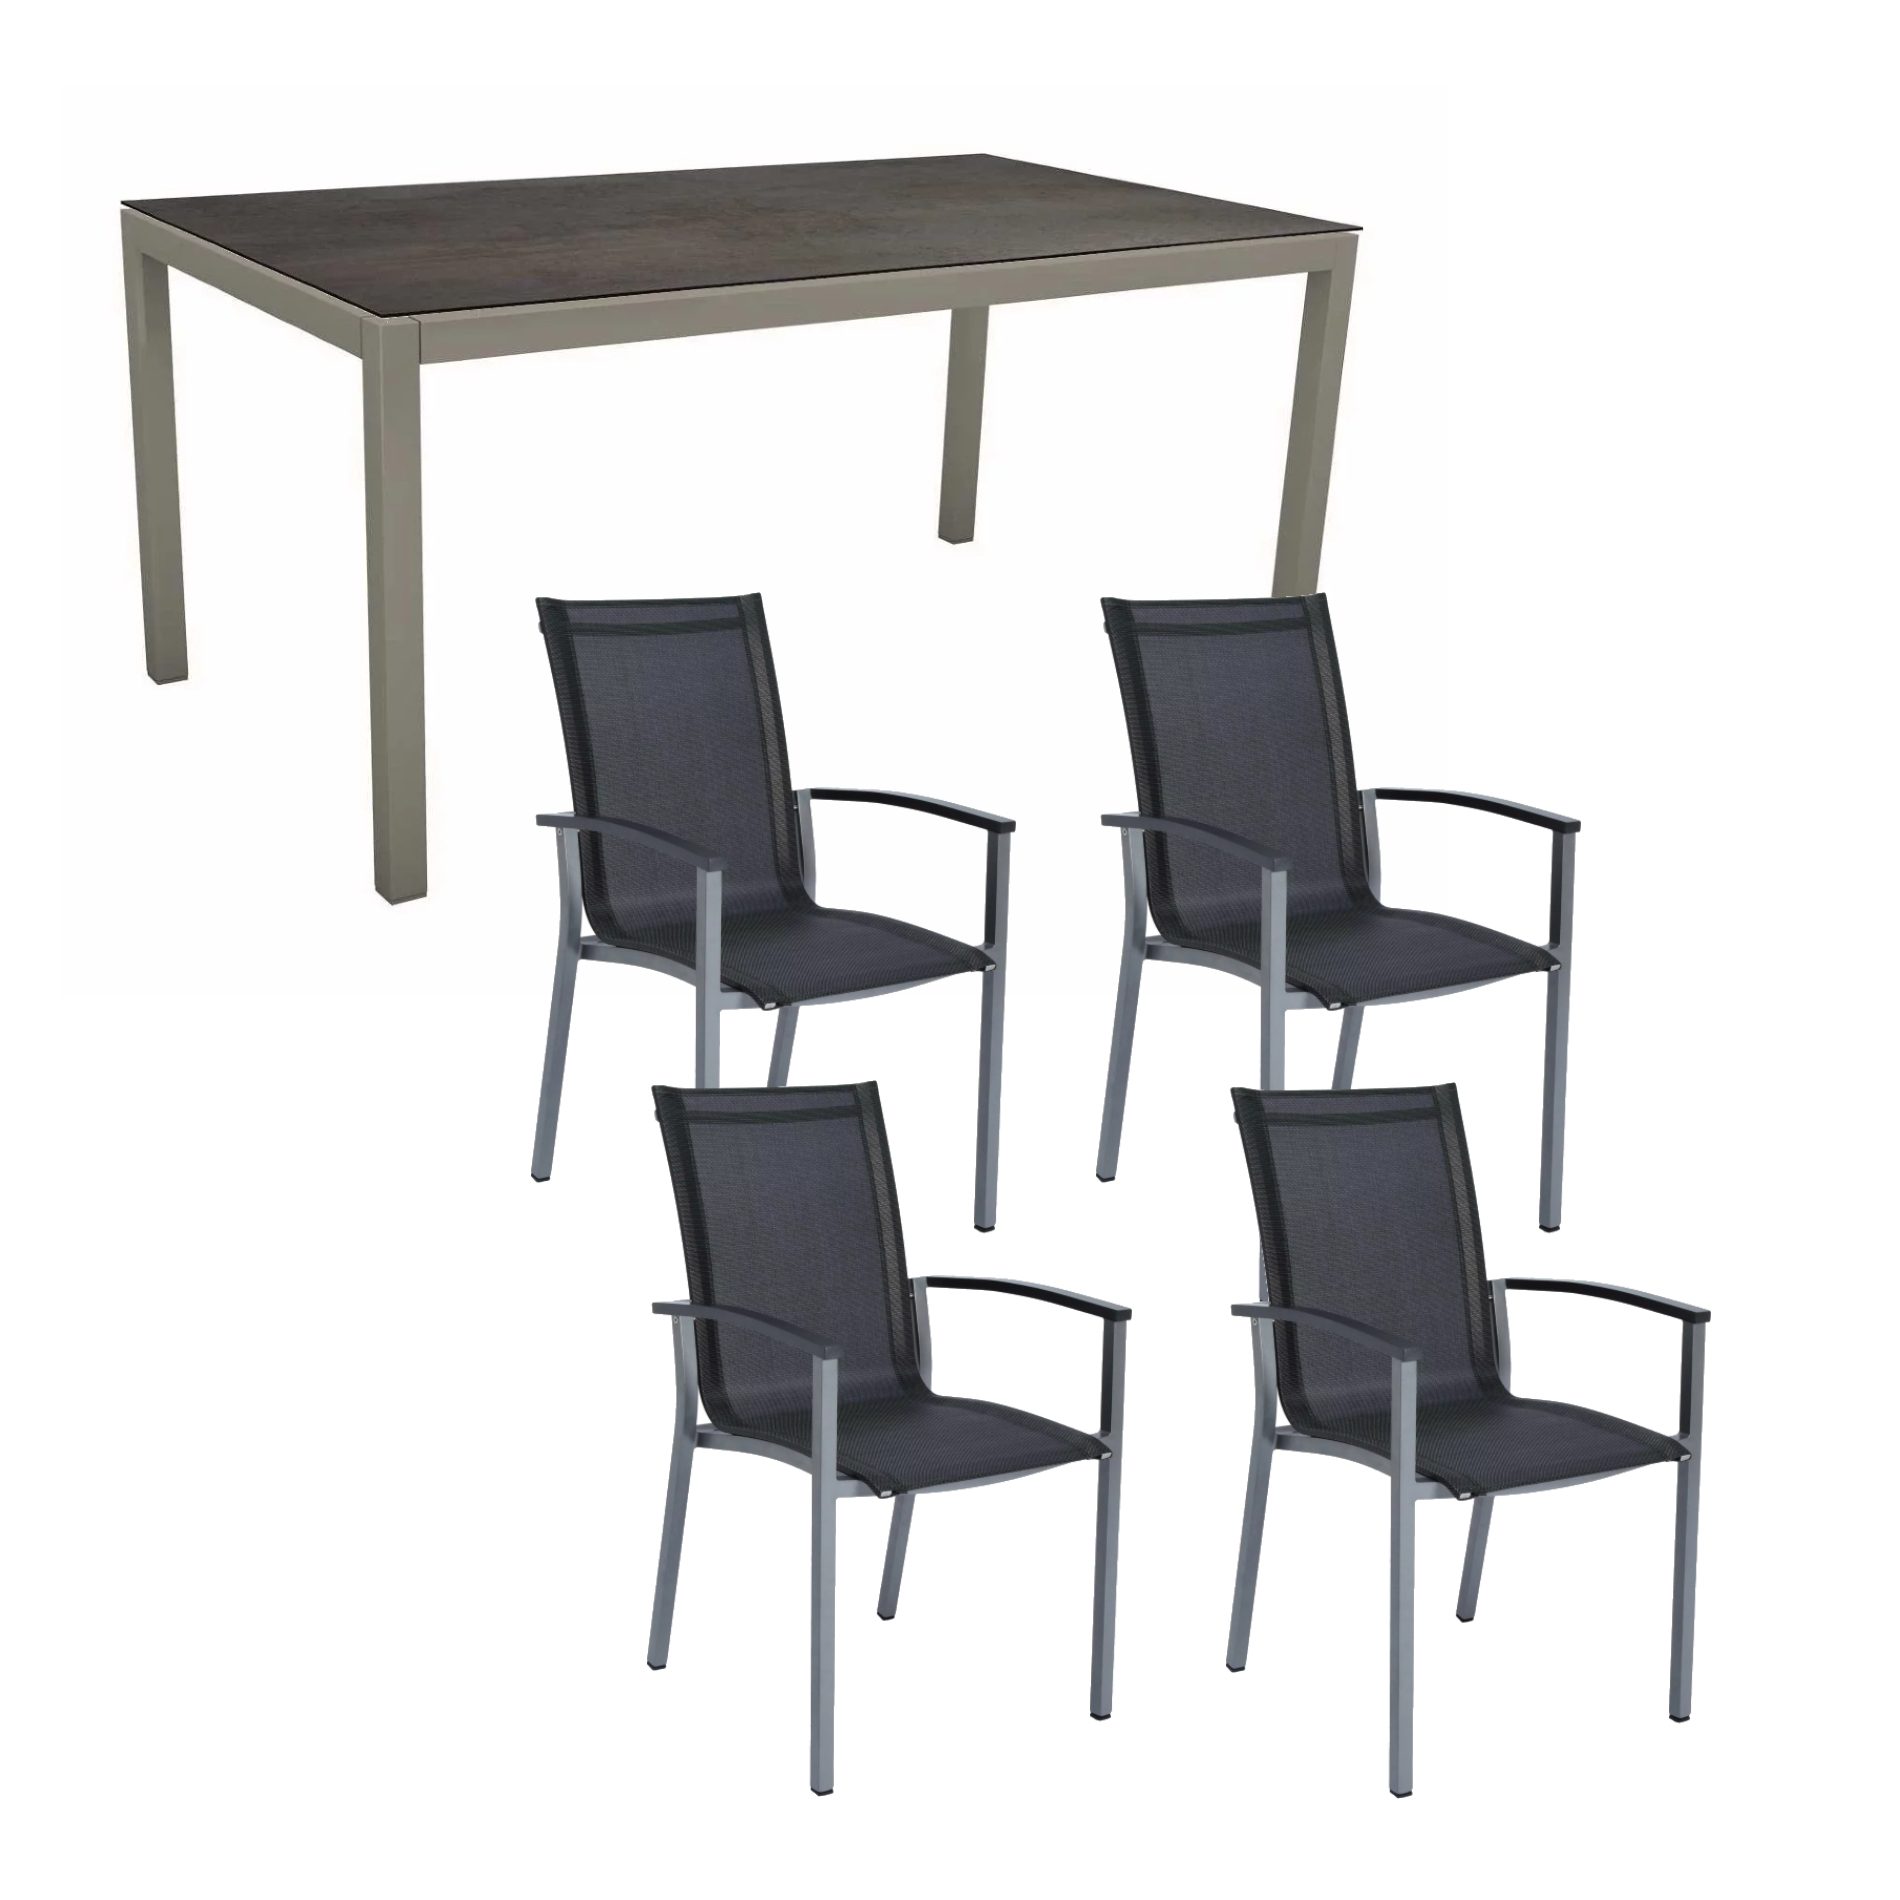 Stern Gartenmöbel-Set "Evoee", Gestelle Aluminium graphit, Sitzfläche Textilgewebe silbergrau, Tischplatte HPL Nitro